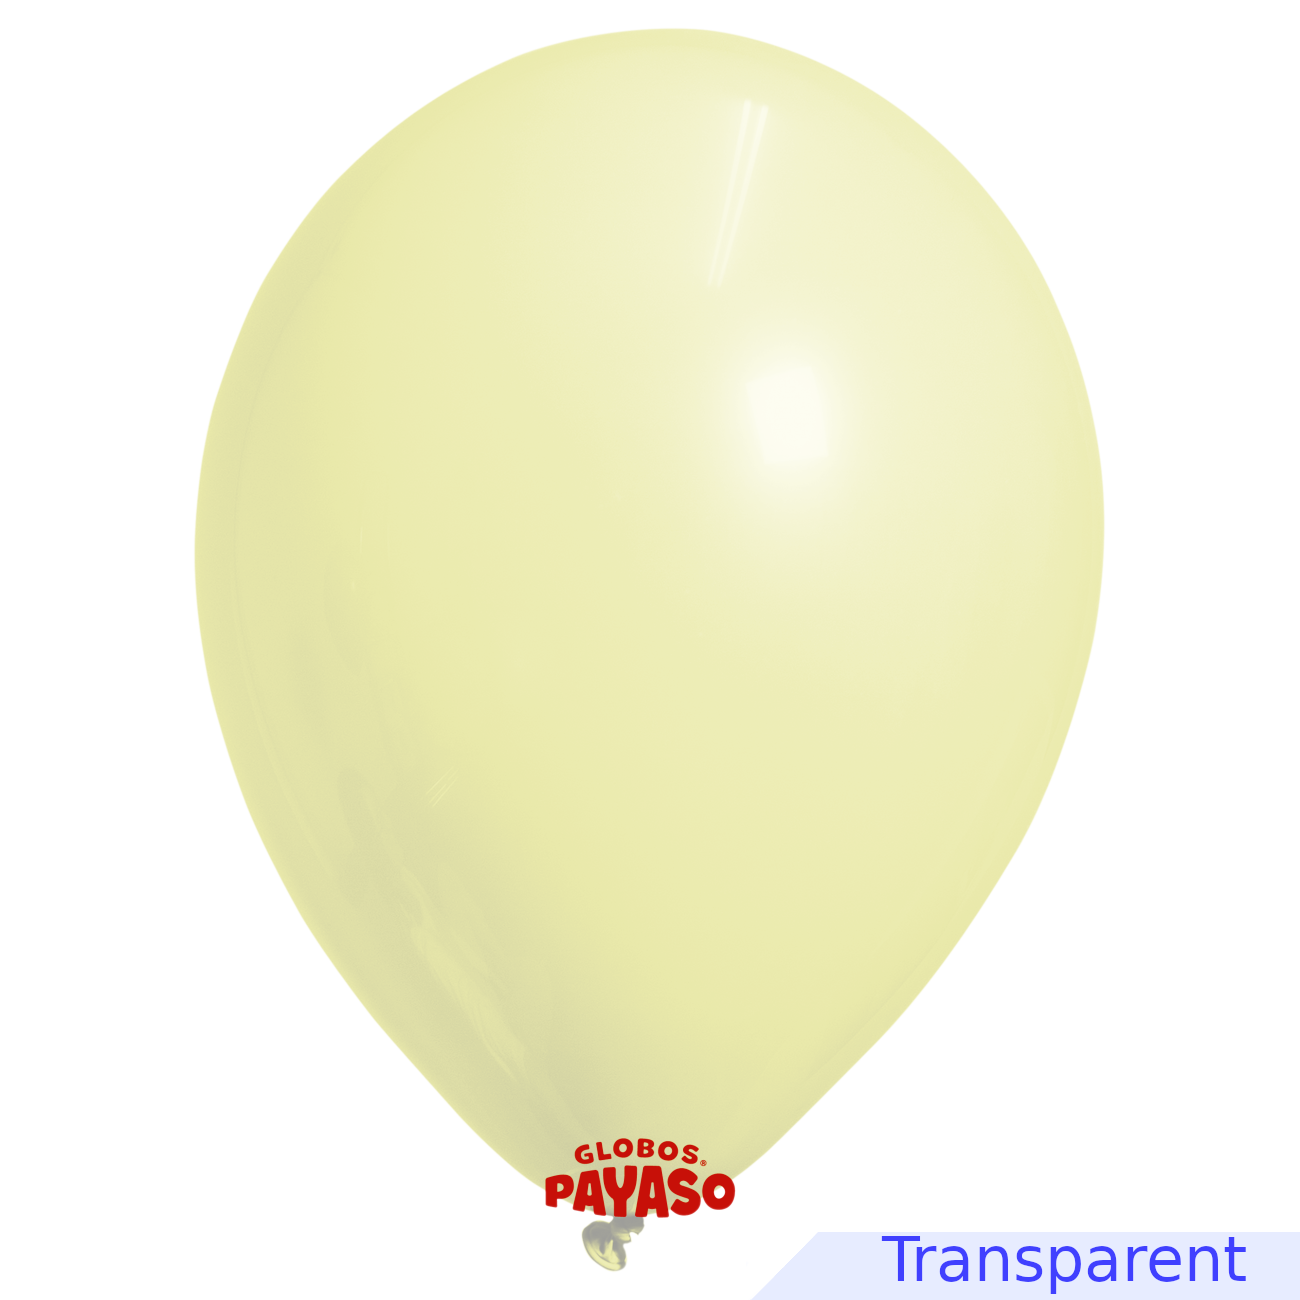 Globos Payaso / Unique 24" Yellow Soap Bubble Balloon